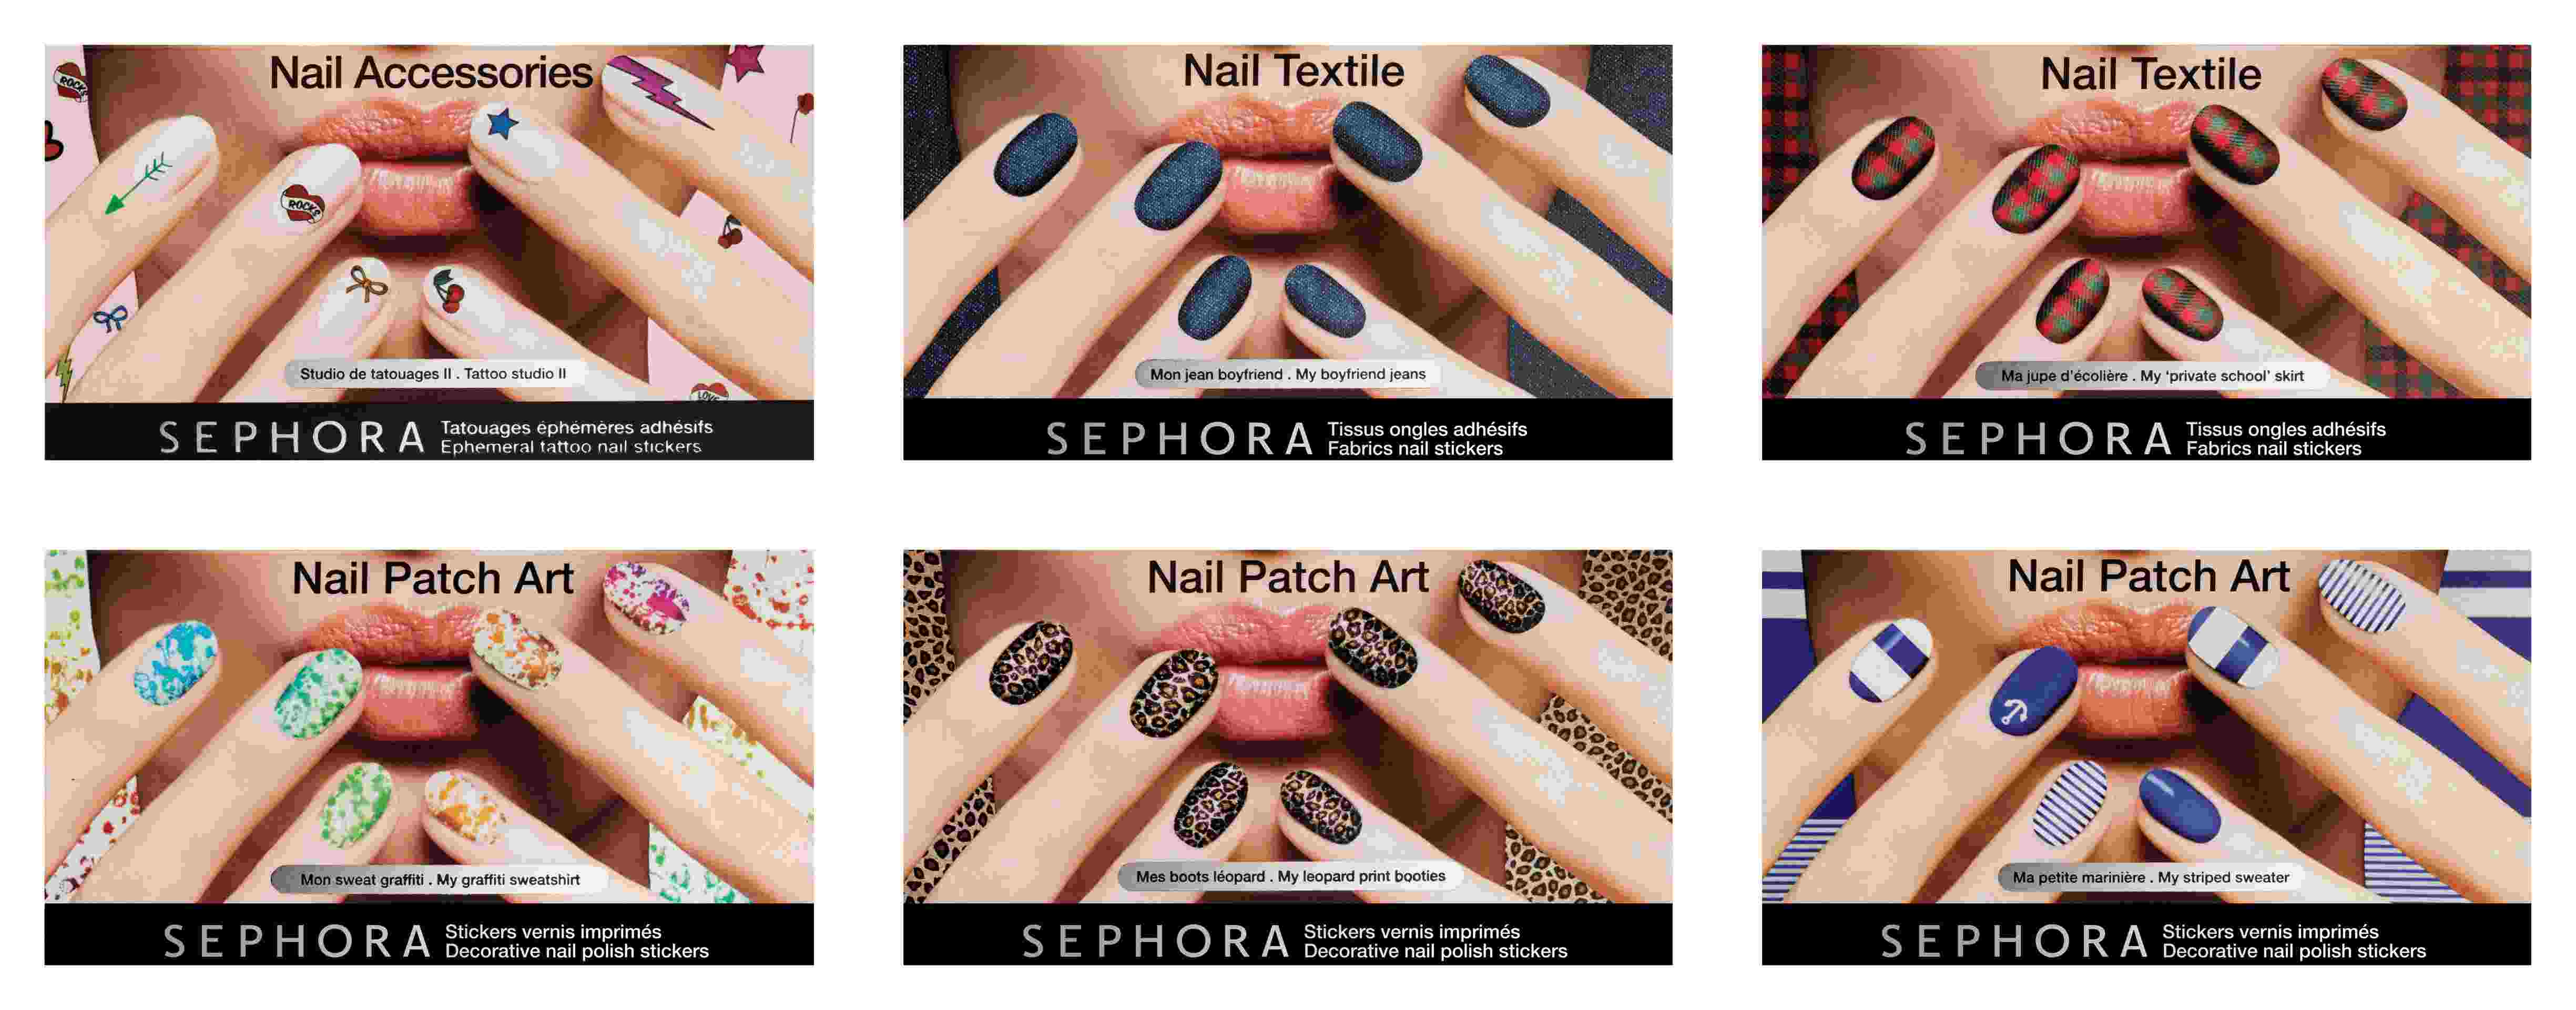 9. Nail Art Design Packs on Sephora - wide 9